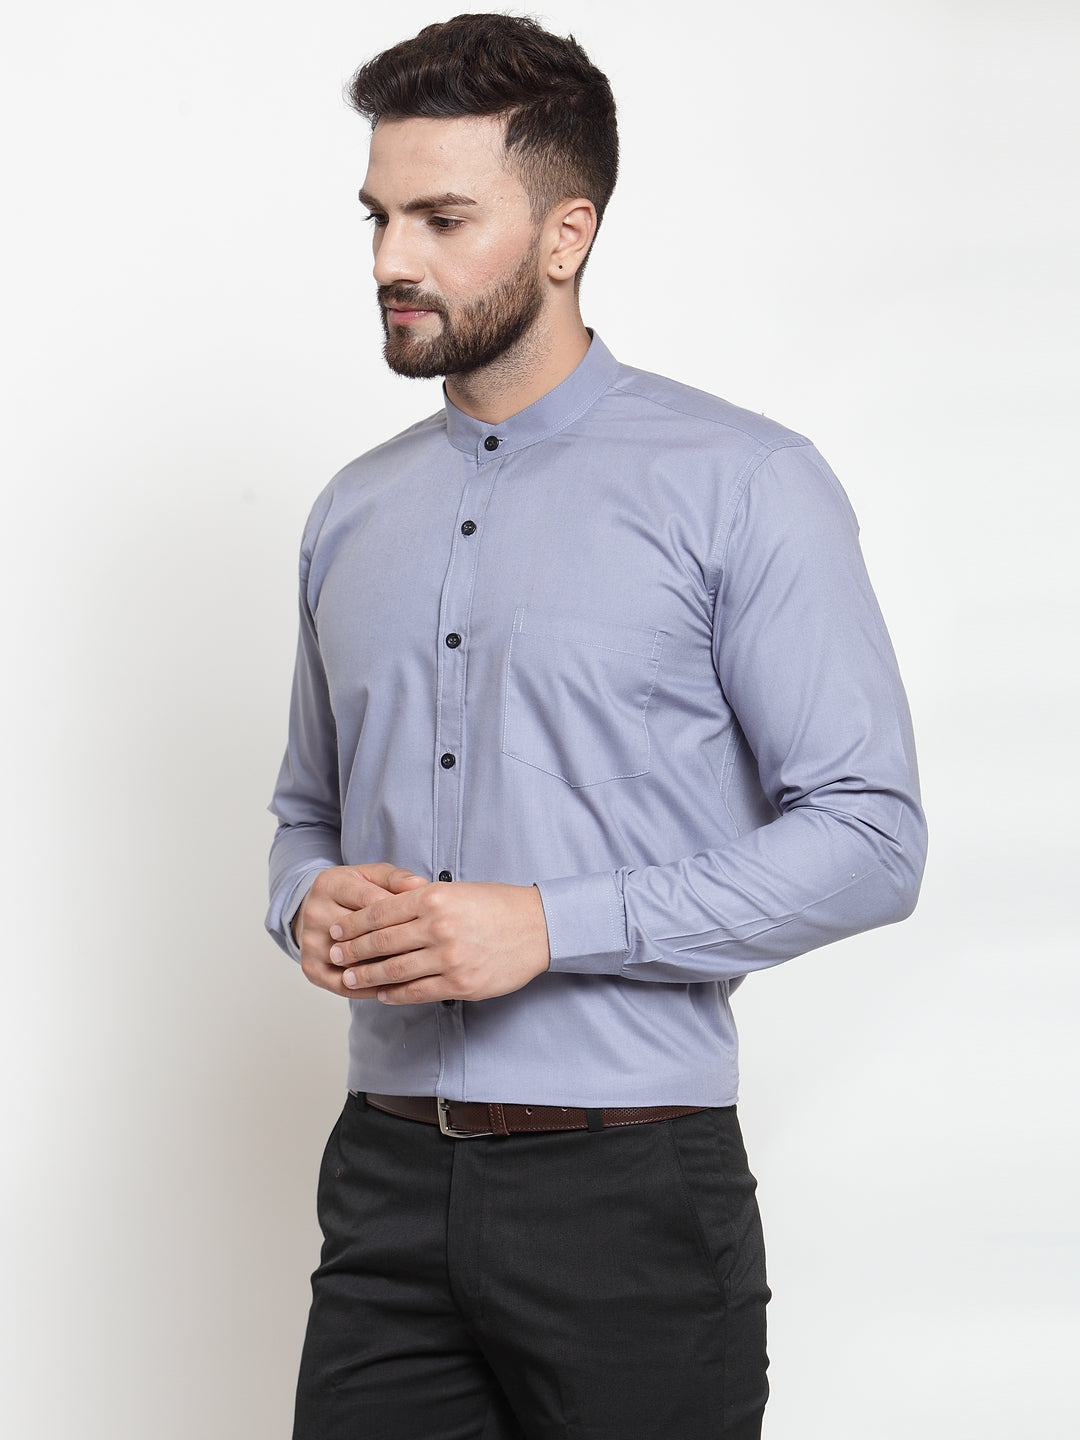 Men's Grey Cotton Solid Mandarin Collar Formal Shirts ( SF 726Light-Grey ) - Jainish